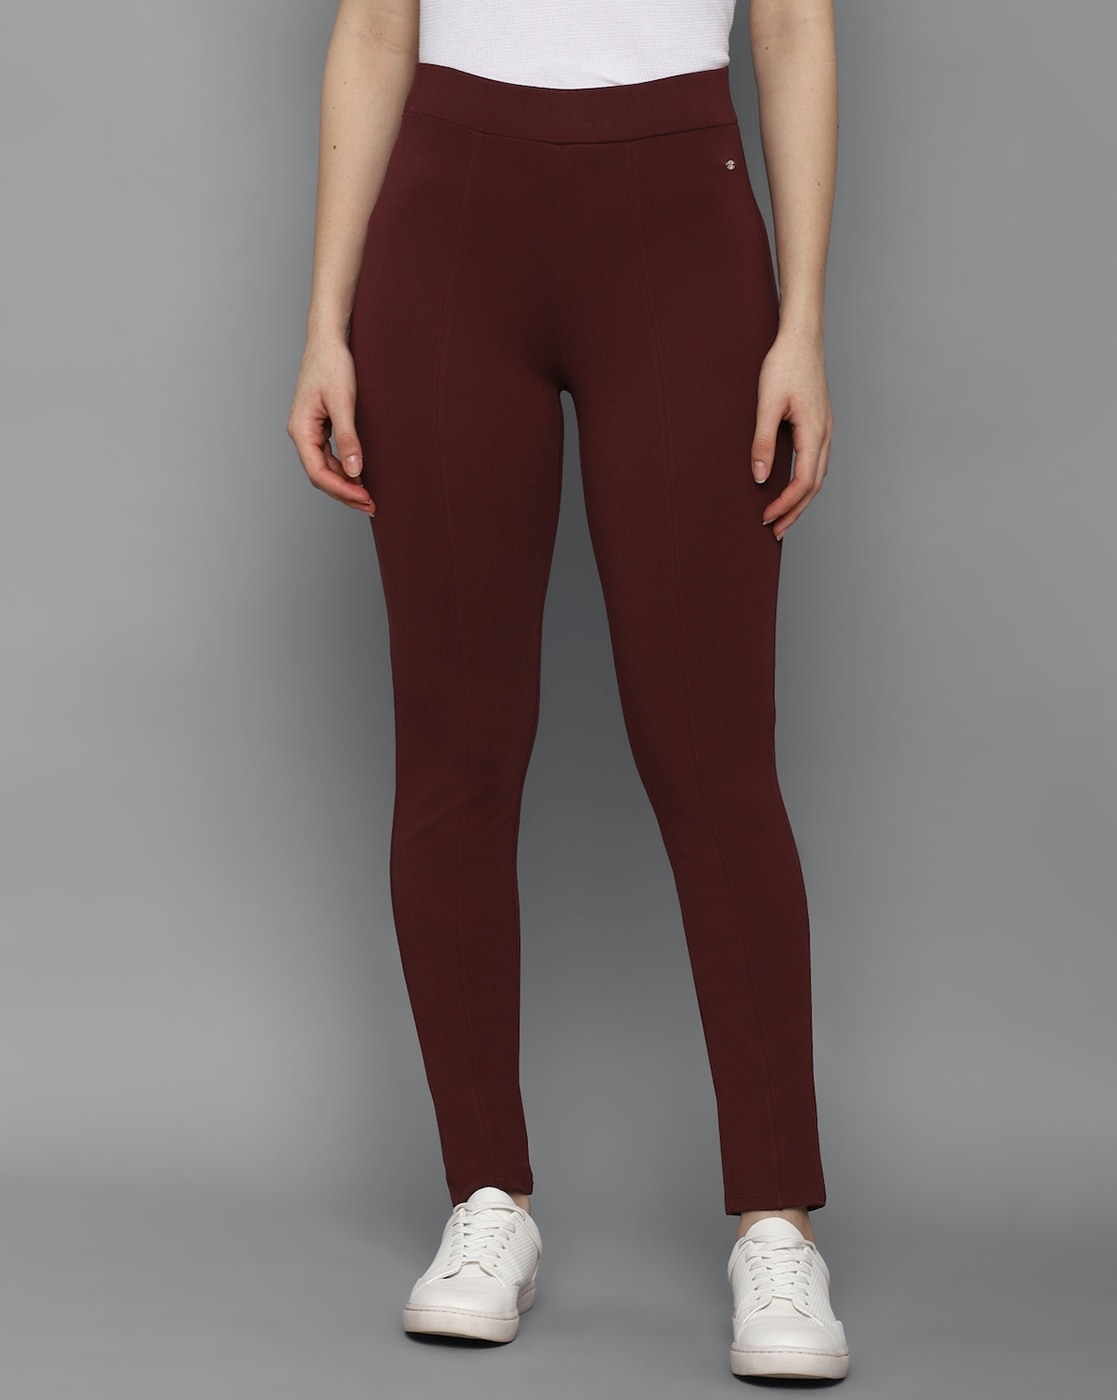 Buy Maroon Trousers  Pants for Women by ALLEN SOLLY Online  Ajiocom